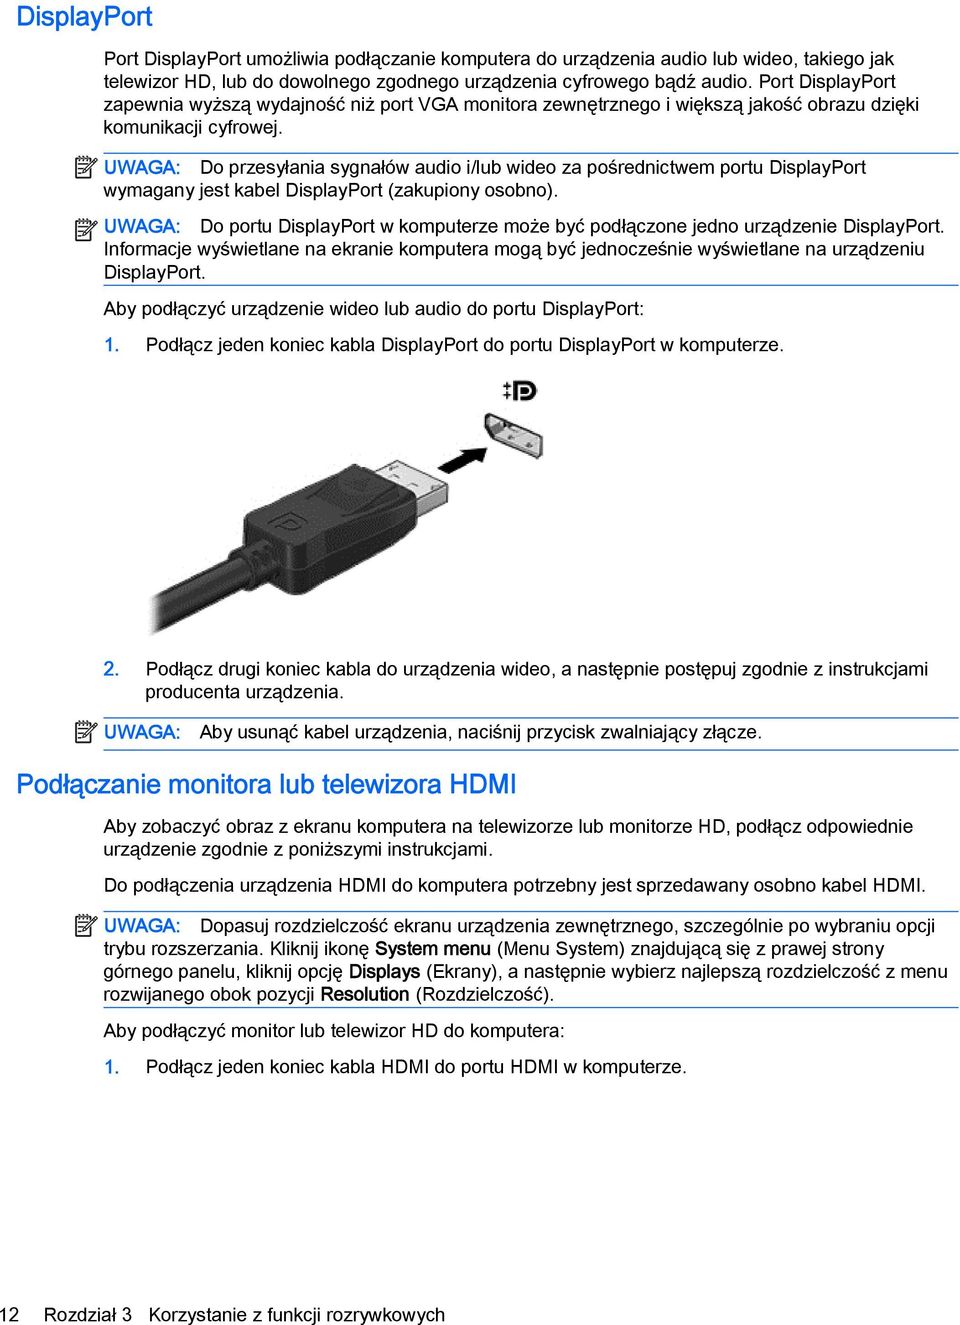 UWAGA: Do przesyłania sygnałów audio i/lub wideo za pośrednictwem portu DisplayPort wymagany jest kabel DisplayPort (zakupiony osobno).